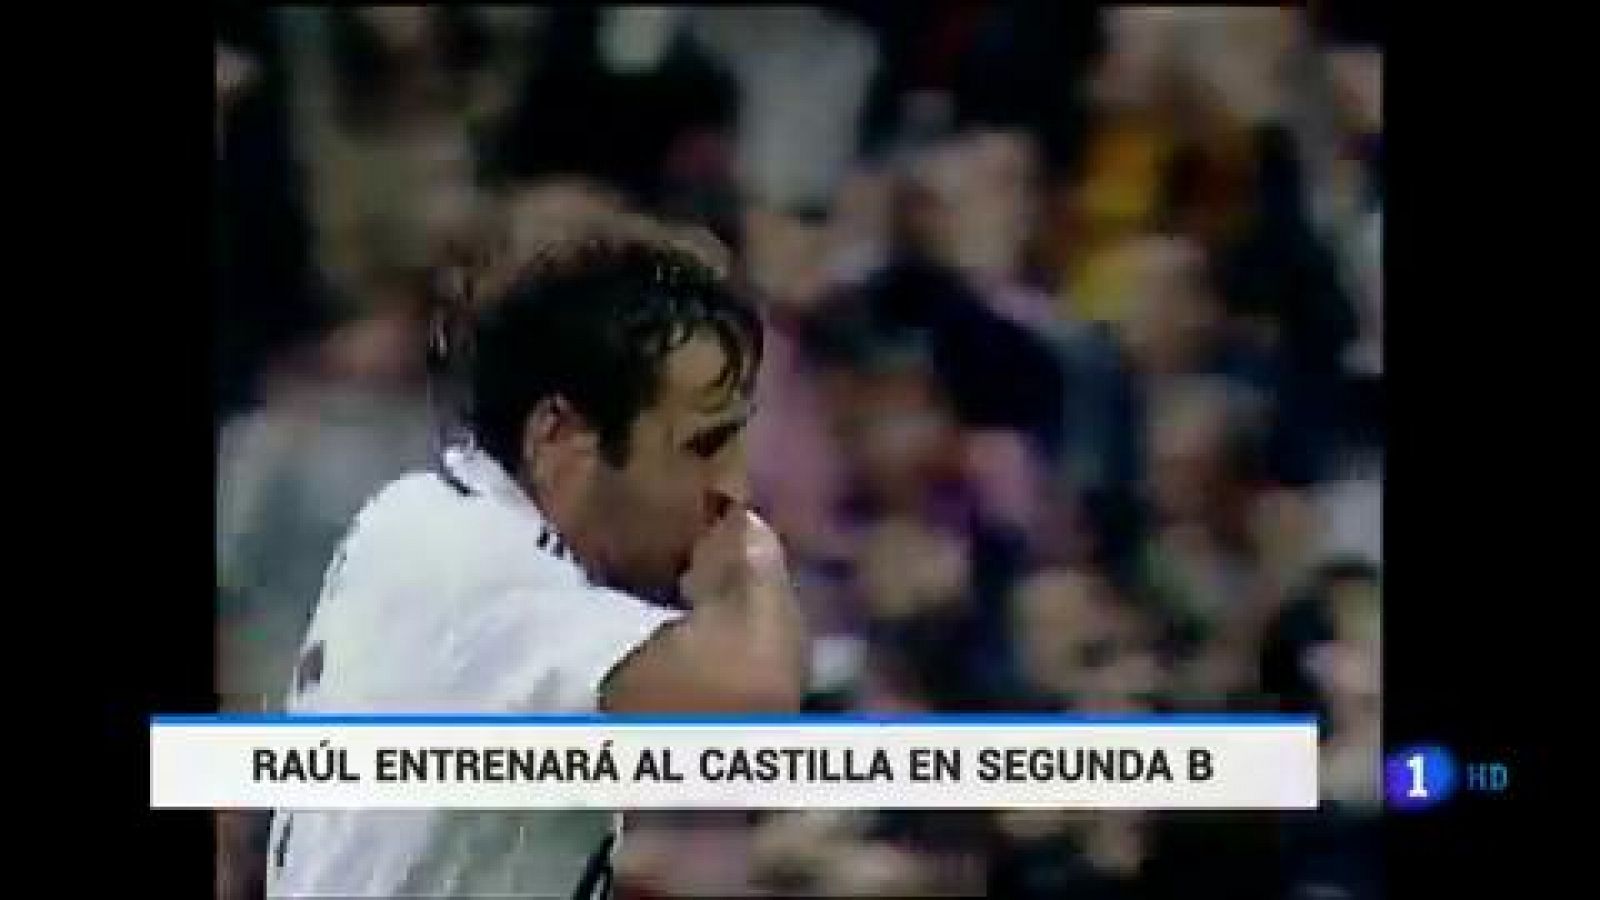 El Real Madrid hizo oficial este jueves que Raúl González Blanco será el técnico del Castilla la próxima temporada. Raúl dirigió el pasado curso al cadete B y al juvenil B en la cantera madridista y ahora da un nuevo paso adelante en su carrera como 